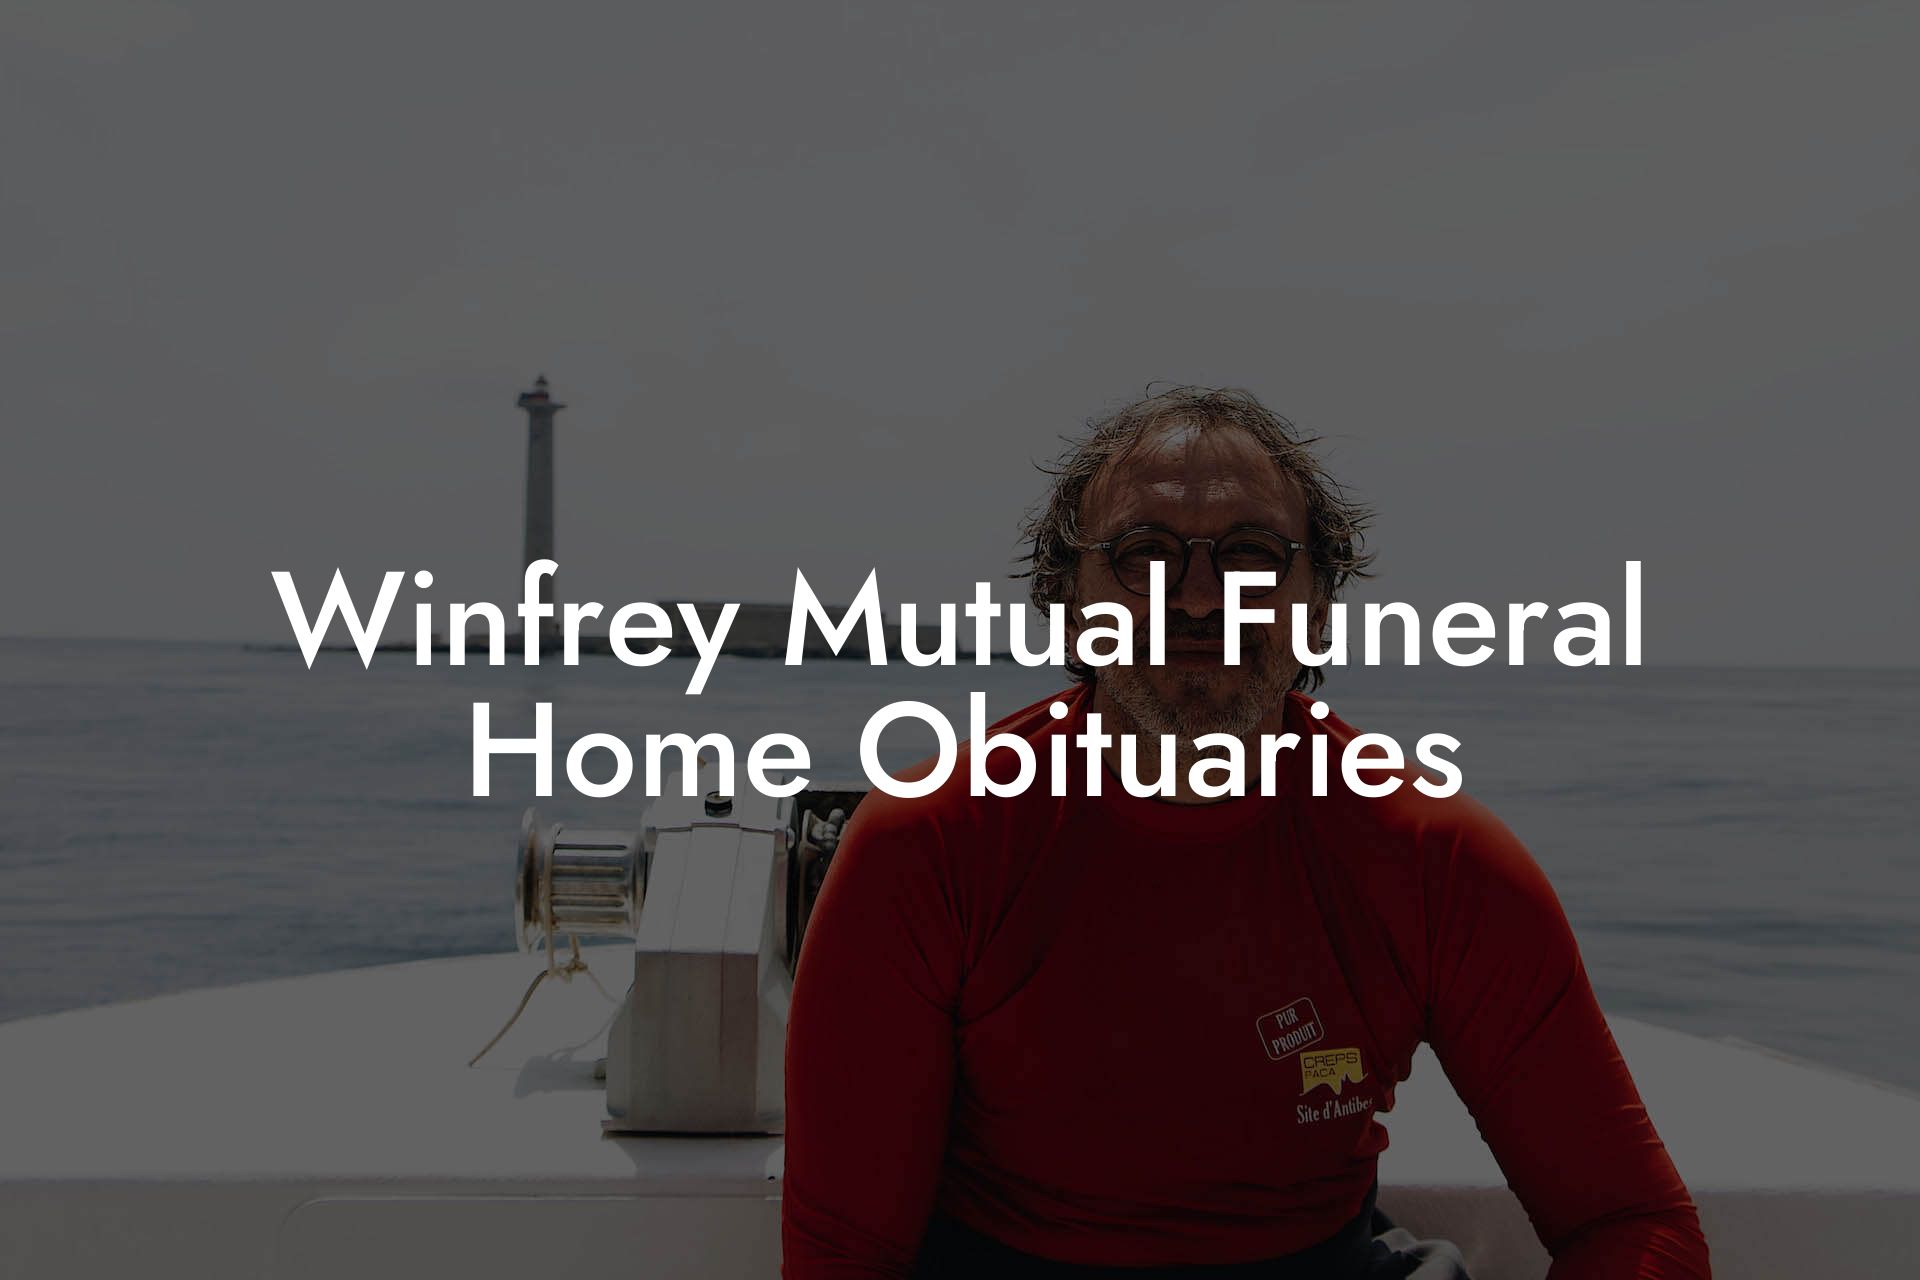 Winfrey Mutual Funeral Home Obituaries